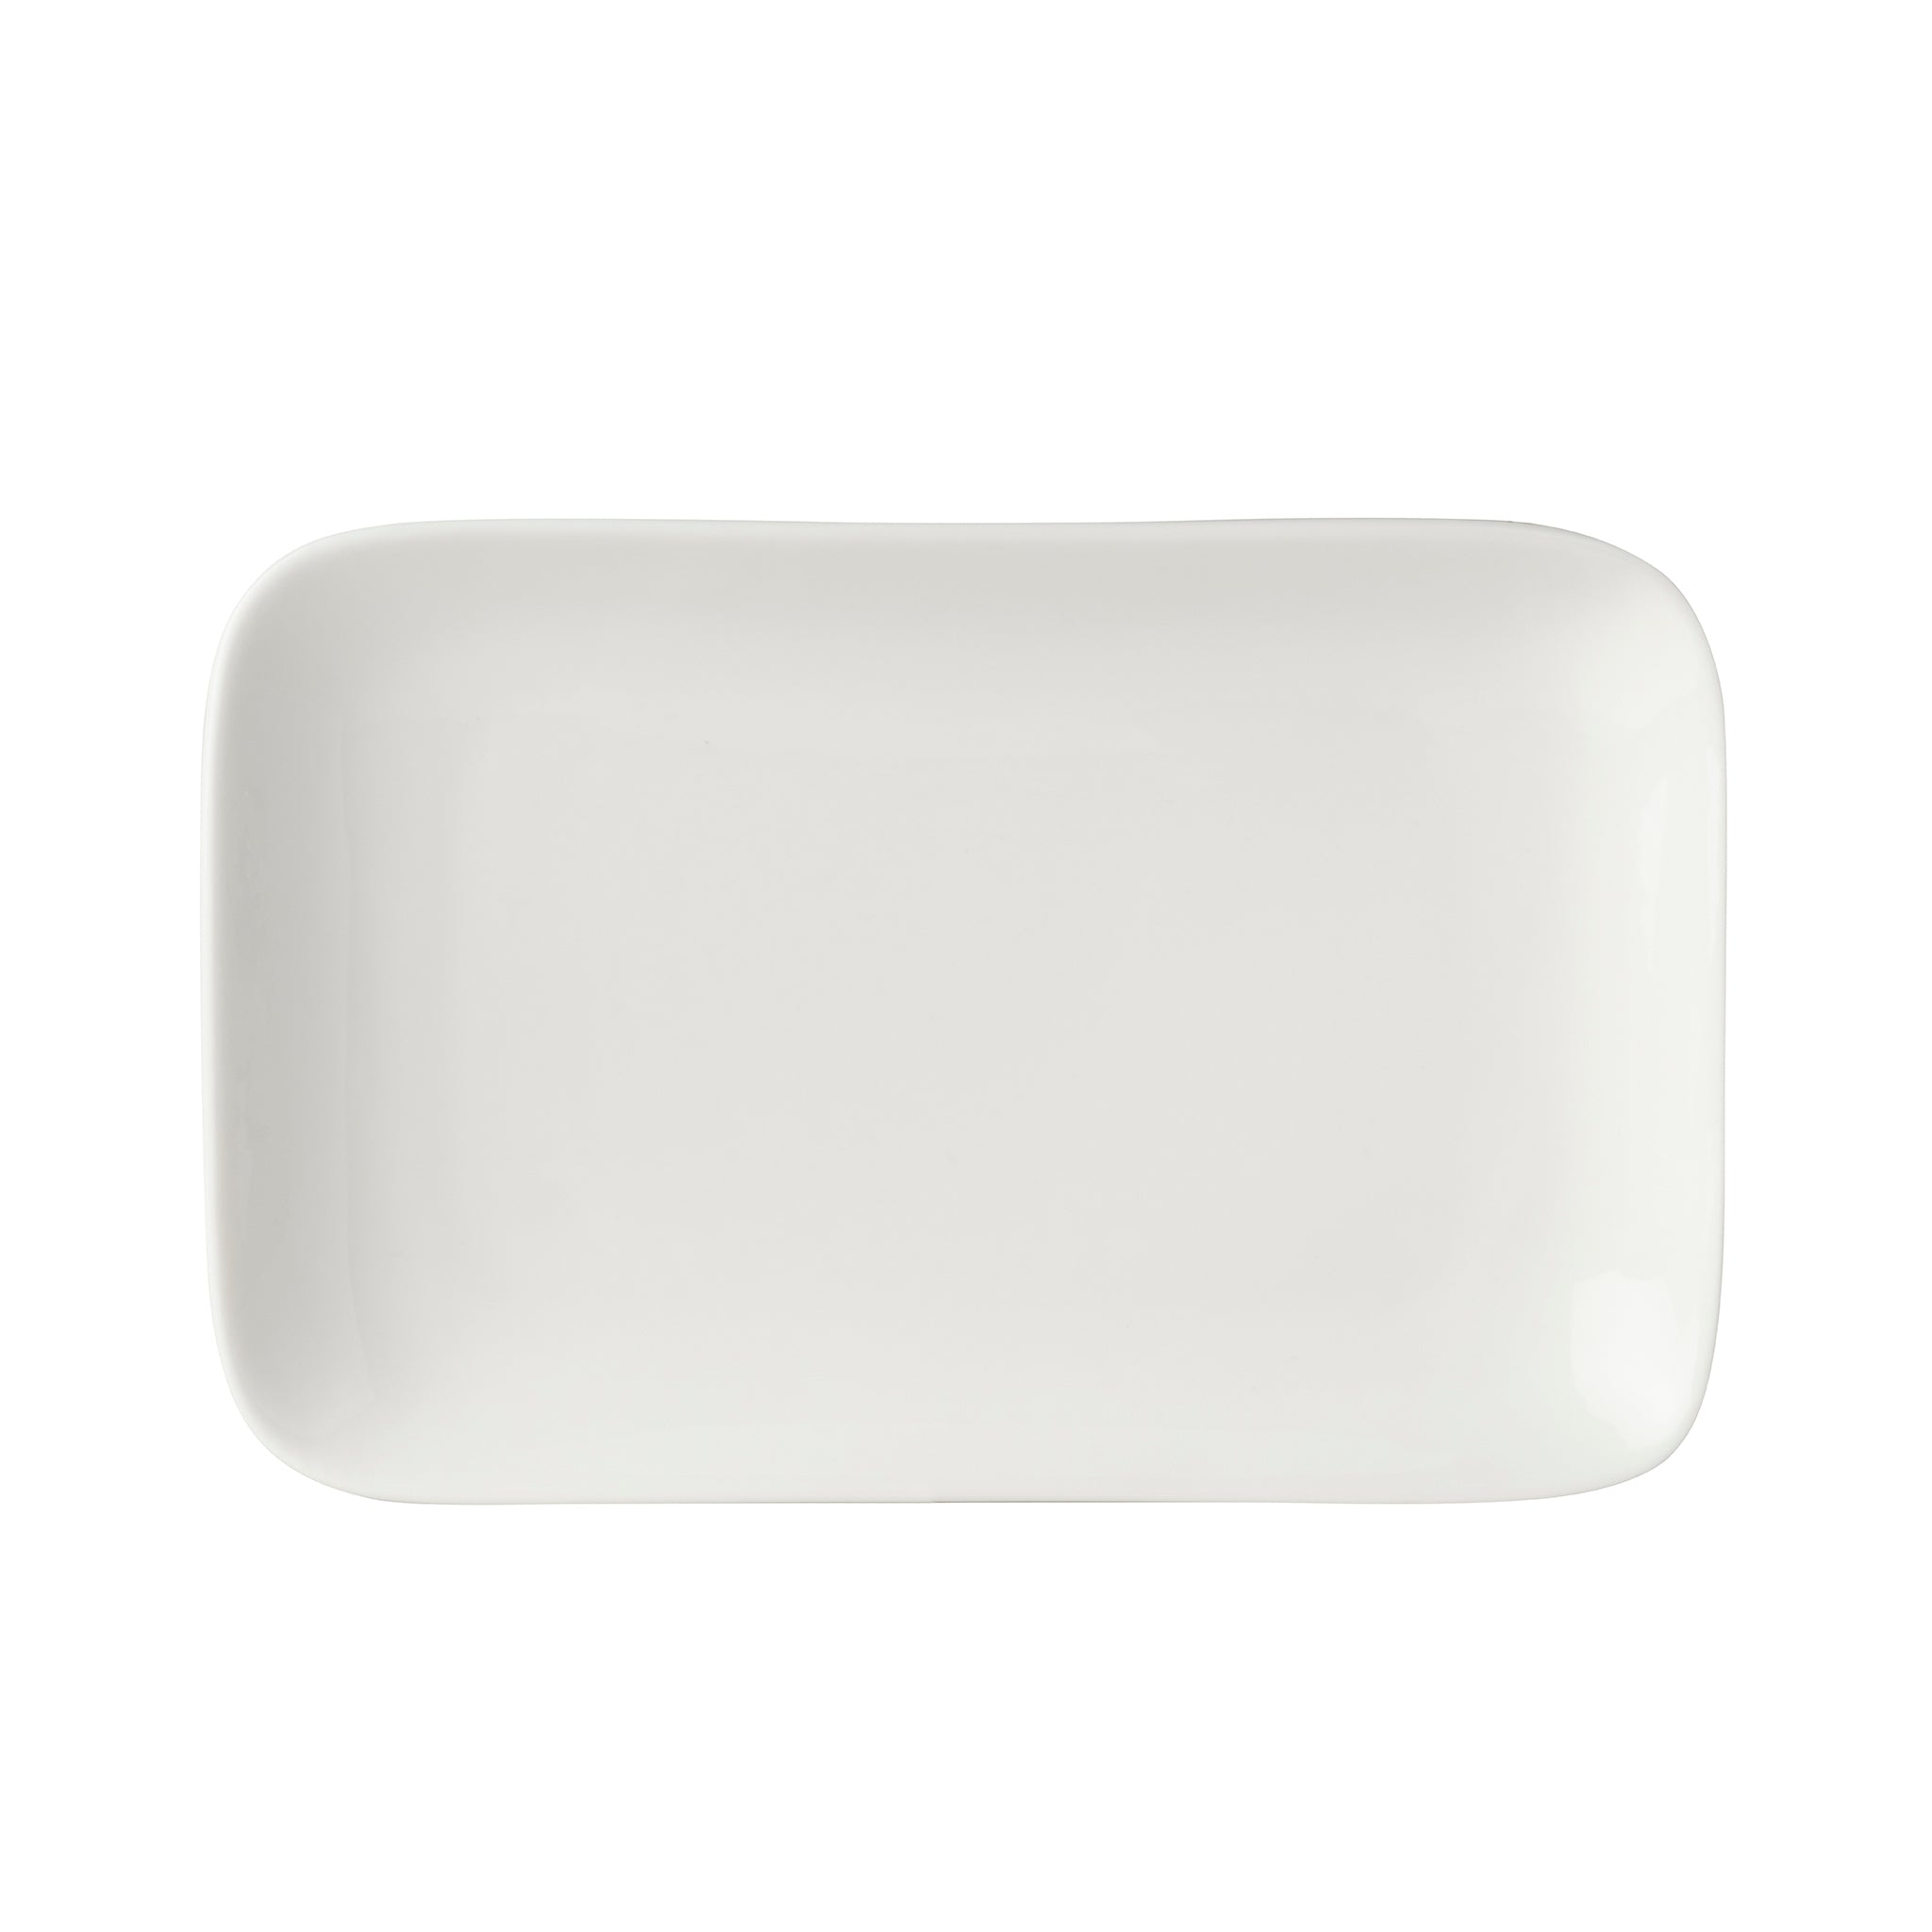 Bistro Porcelain Rectangular Platter 8x5" White